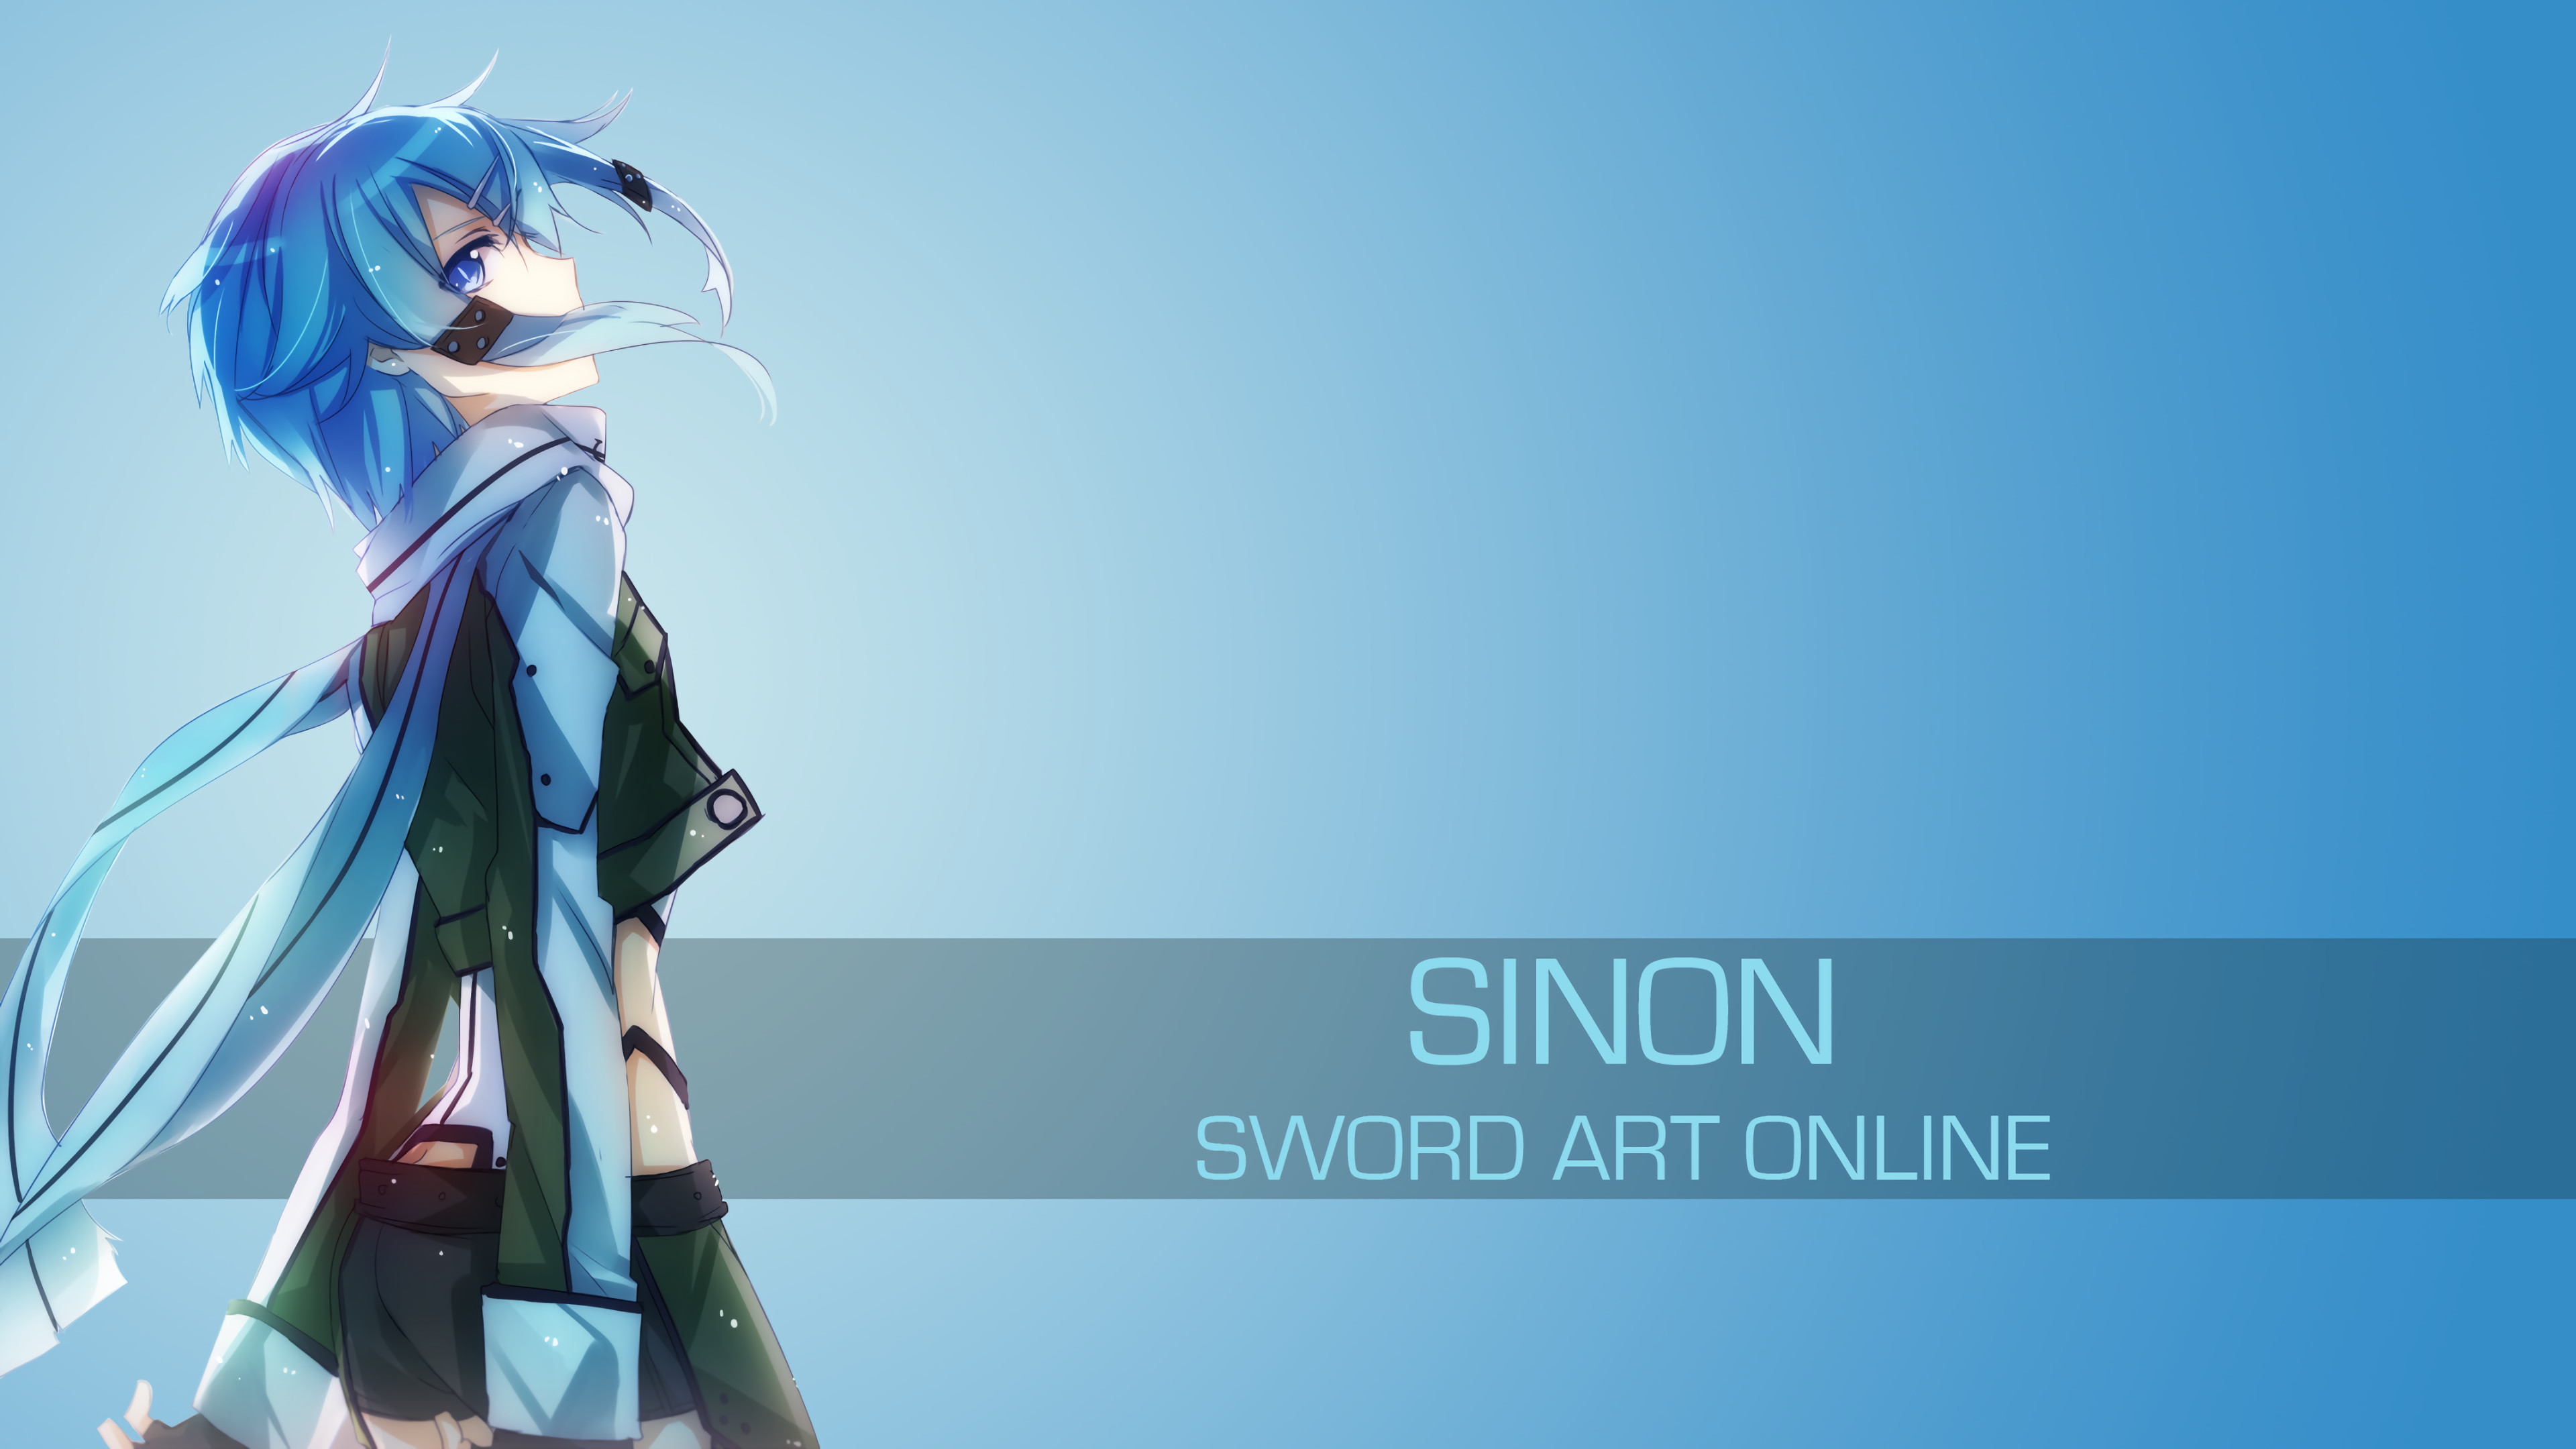 3840x2160 ... Sword Art Online-Sinon 1 by spectralfire234